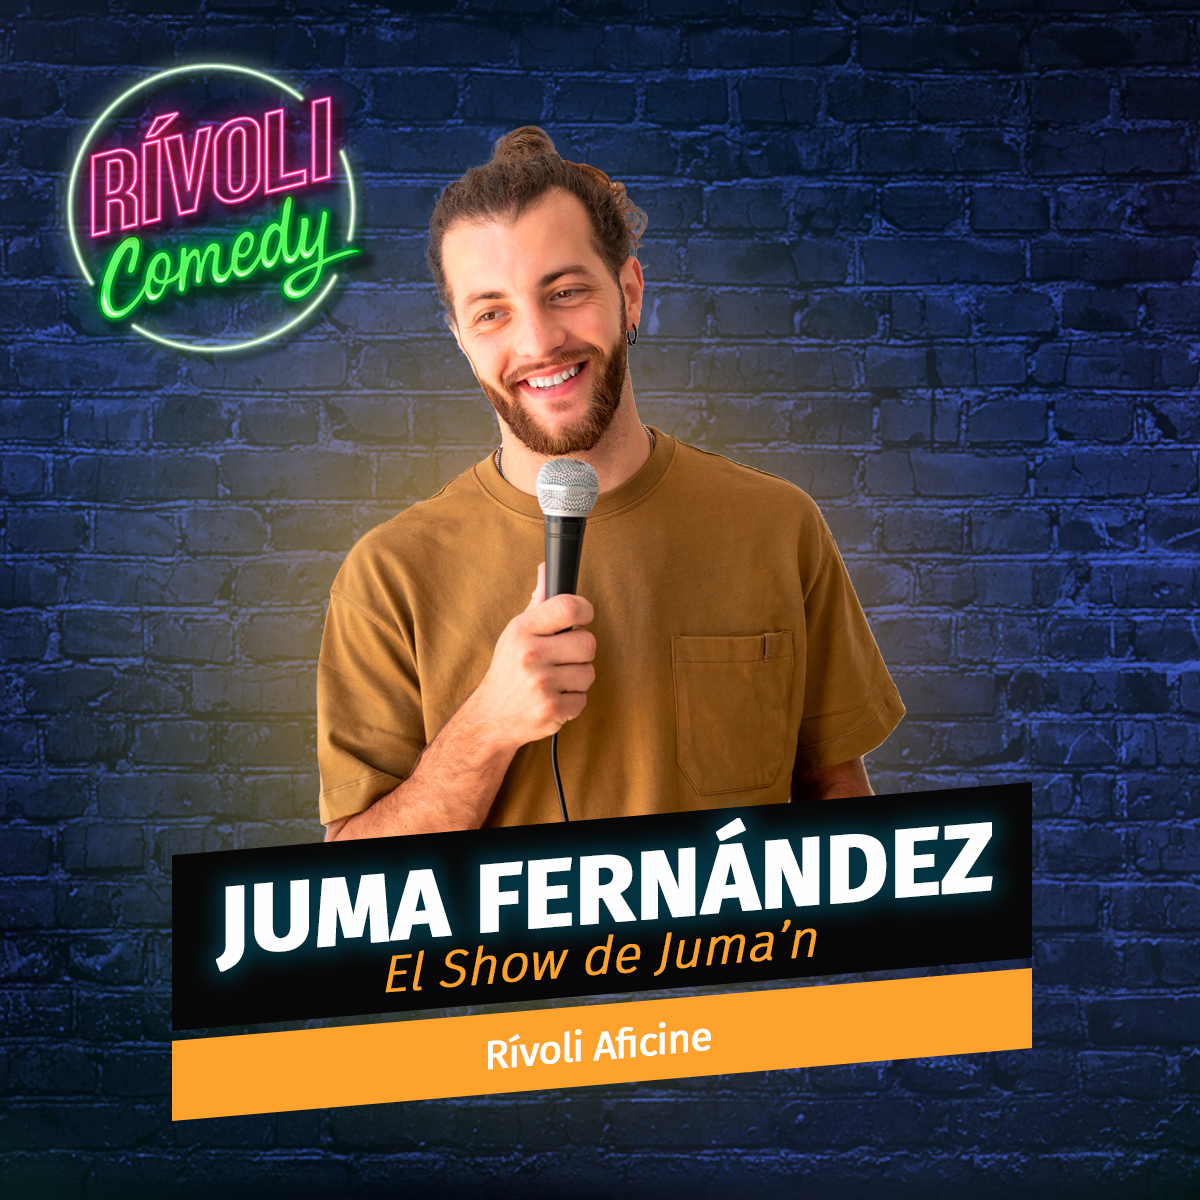 Juma Fernández | El show de Juma'n · Palma de Mallorca (Rívoli Comedy)